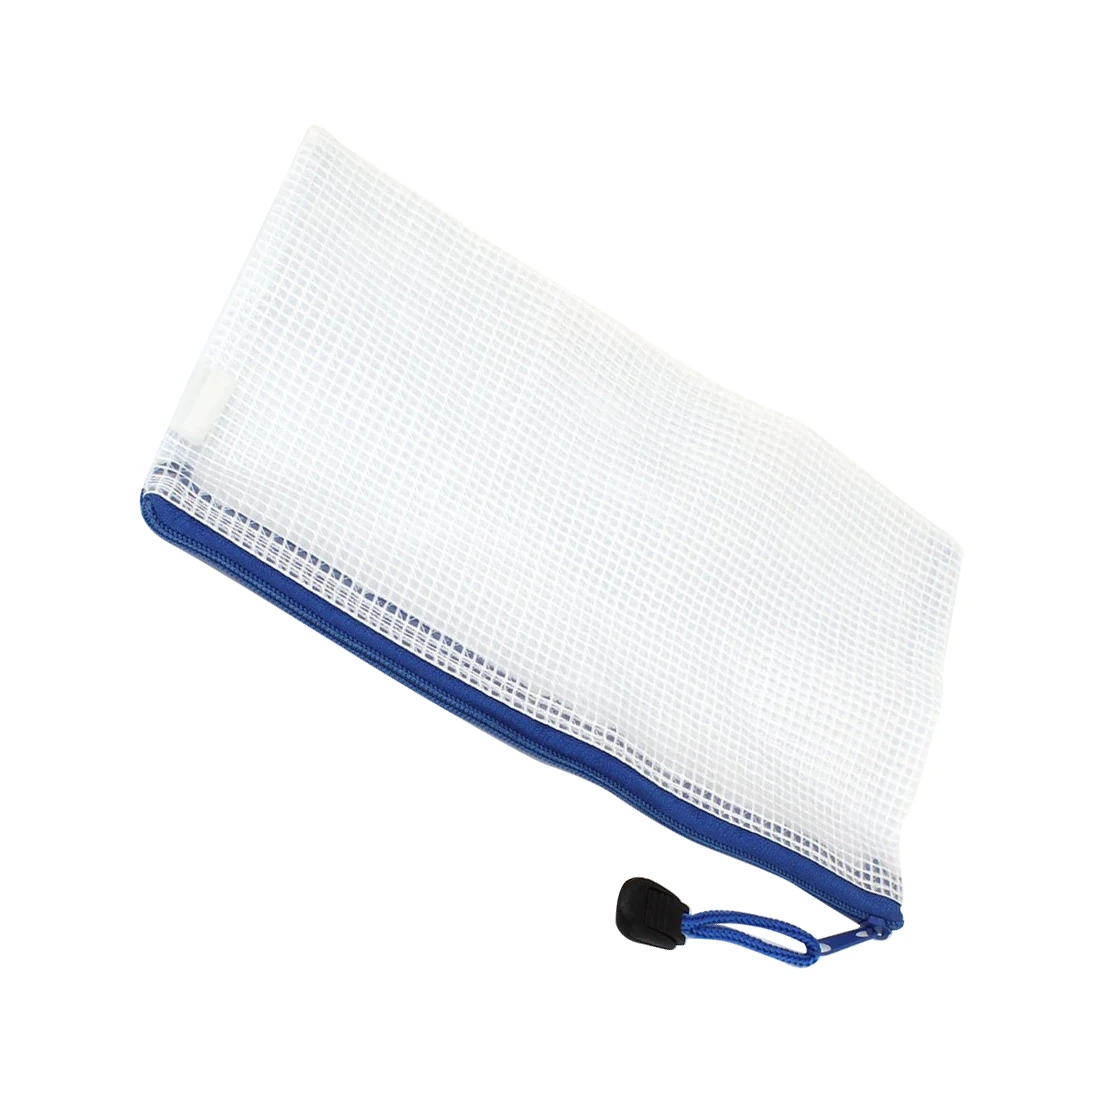 Сине-белые Net внутри молнии чехол держатель 210 мм x 110 мм для A6 Бумага